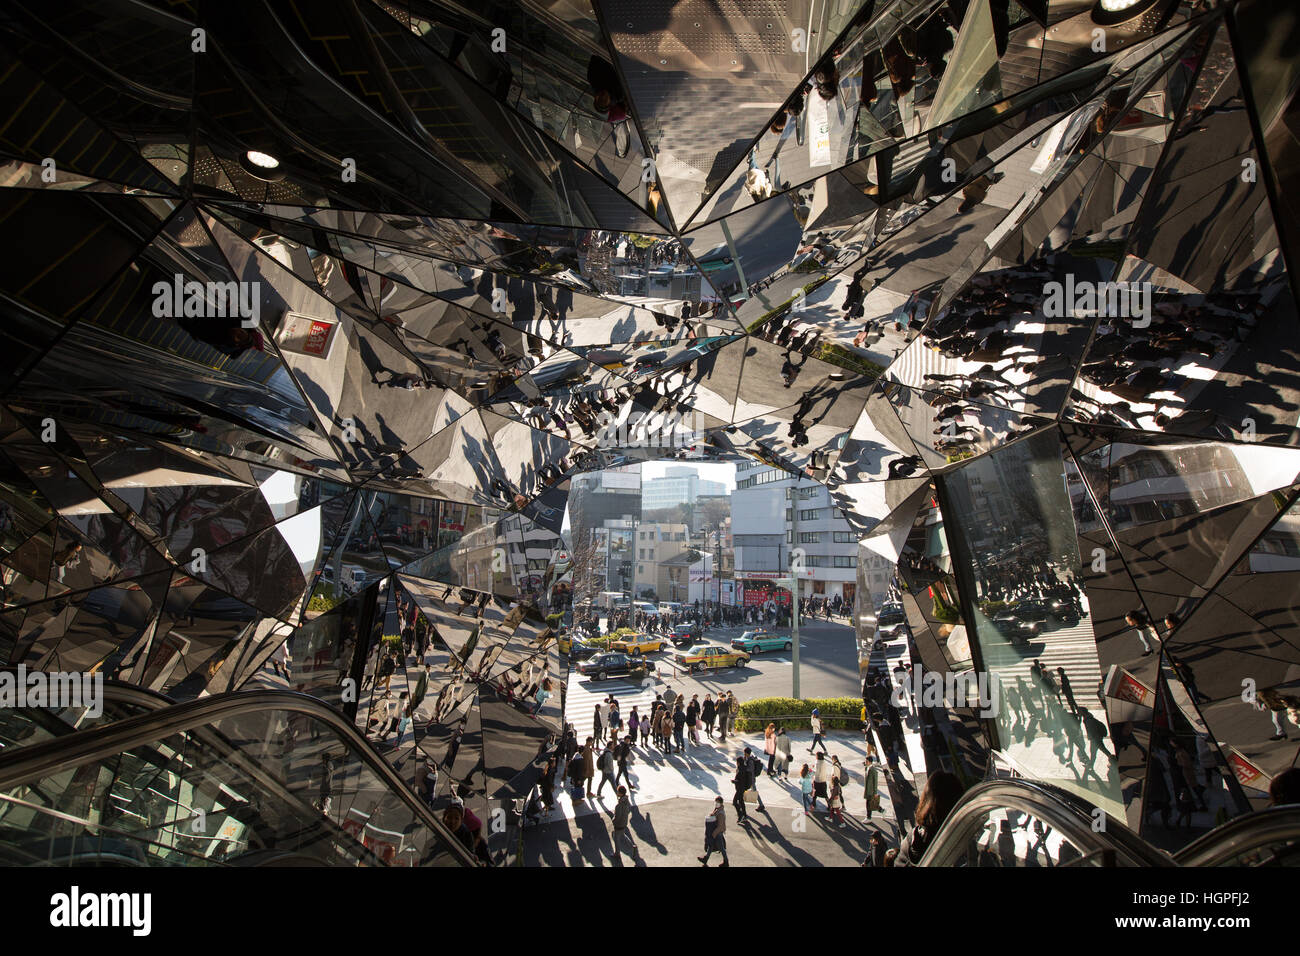 Il caleidoscopio specchiata interno del Tokyo Plaza shopping mall, in Harajuku, a Tokyo, Giappone. Foto Stock